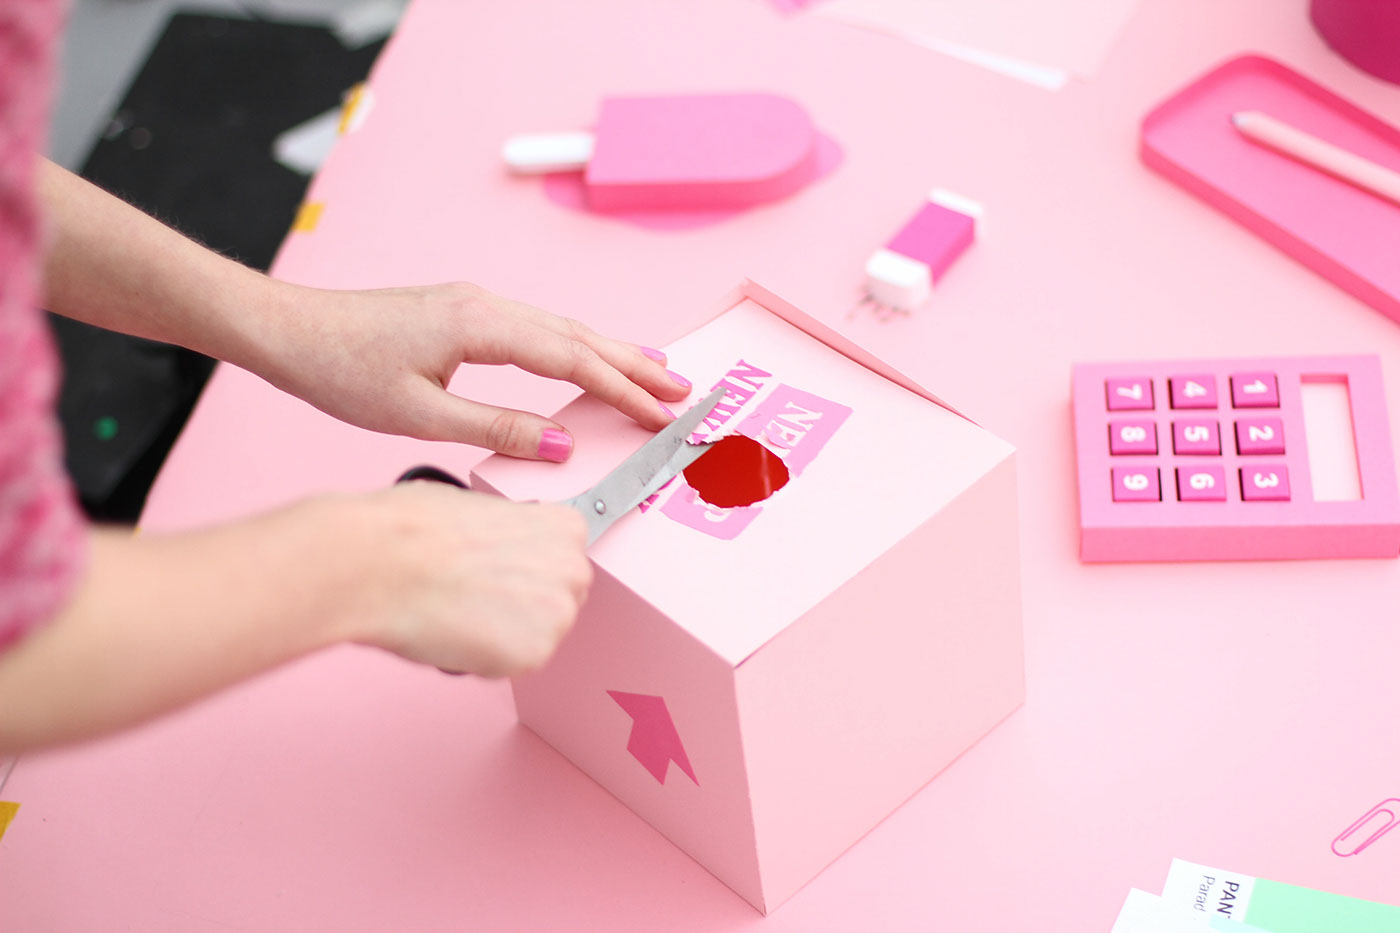 SNASK papercraft stop motion craft handcrafted pink paper stop motion Stockholm grid cutting knife desk dragonframe